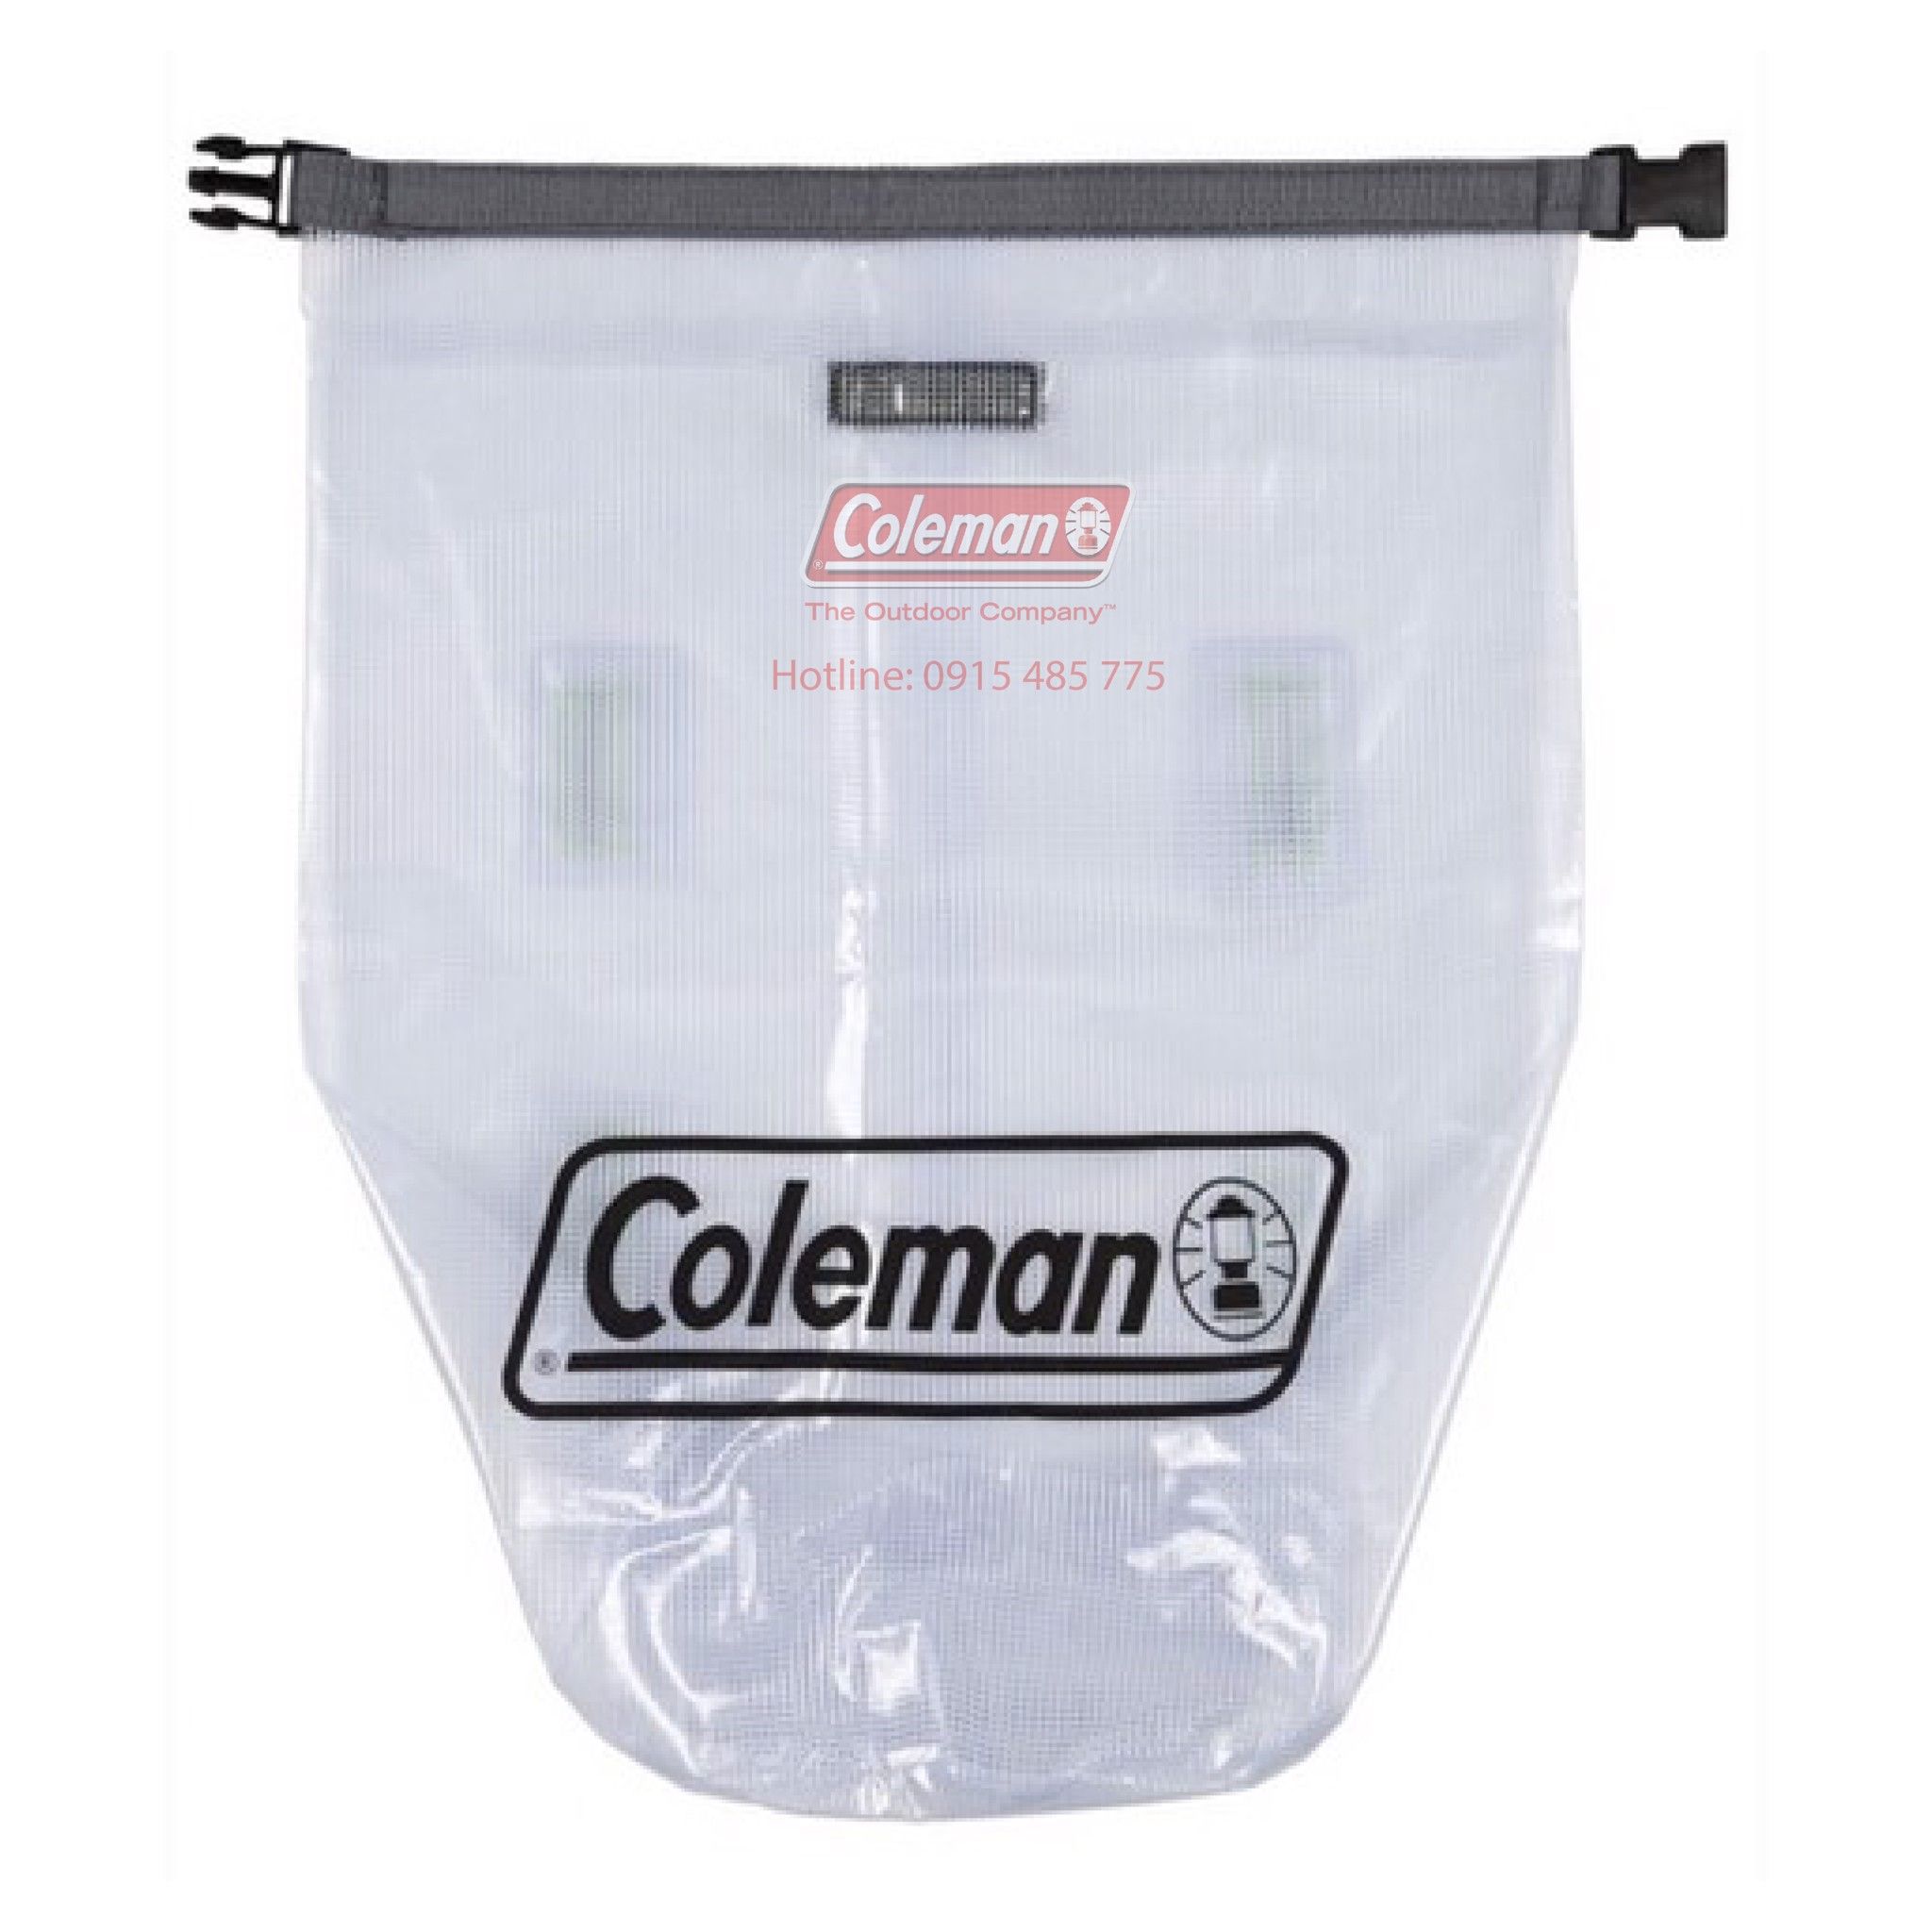  Túi đựng đồ Coleman 110x40 cm - 2000015855 Dry Gear Bag 43 x 16 